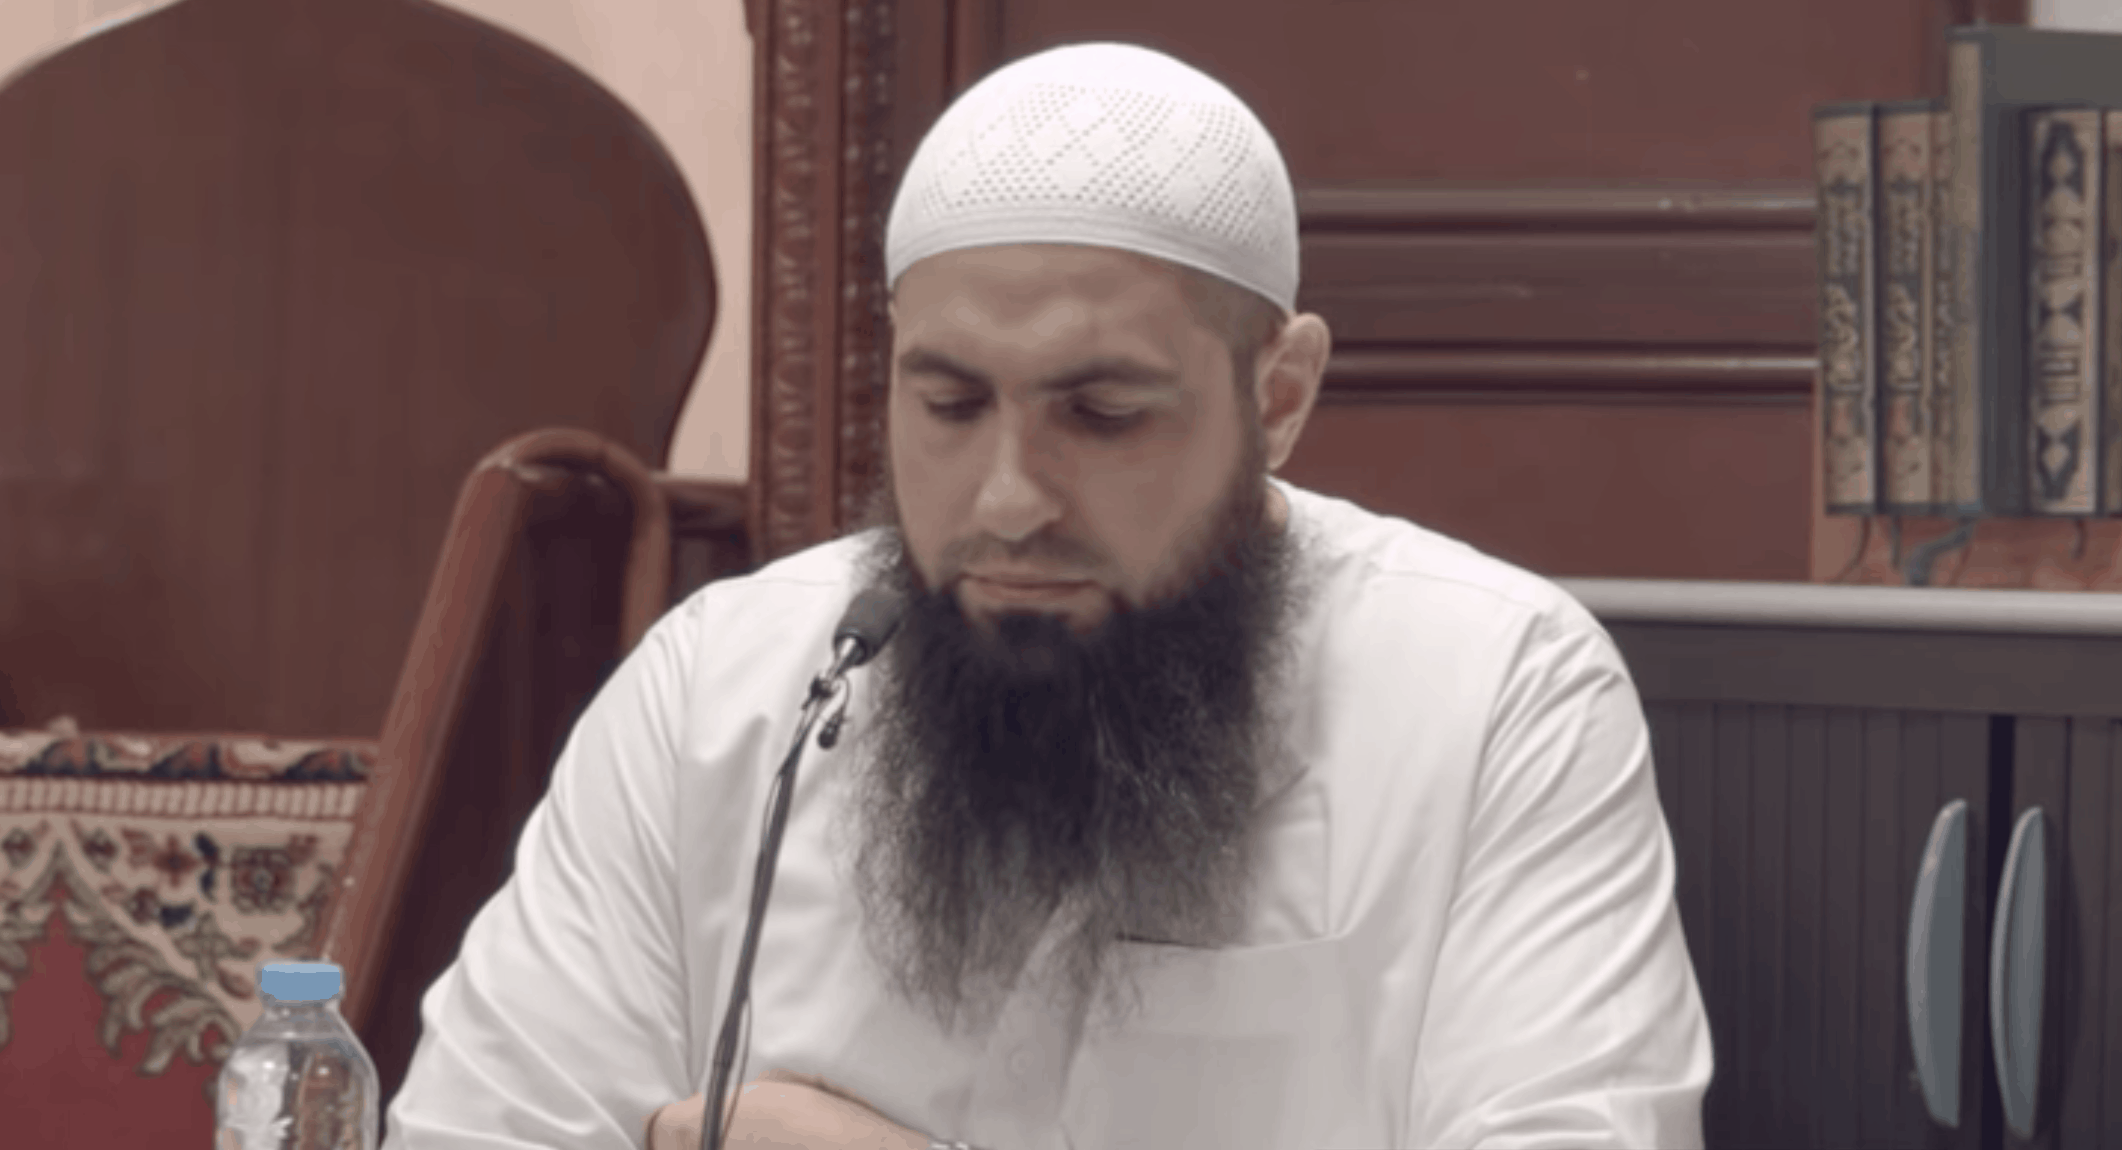 Mohamed Hoblos – Your Sins Affect All of the Ummah